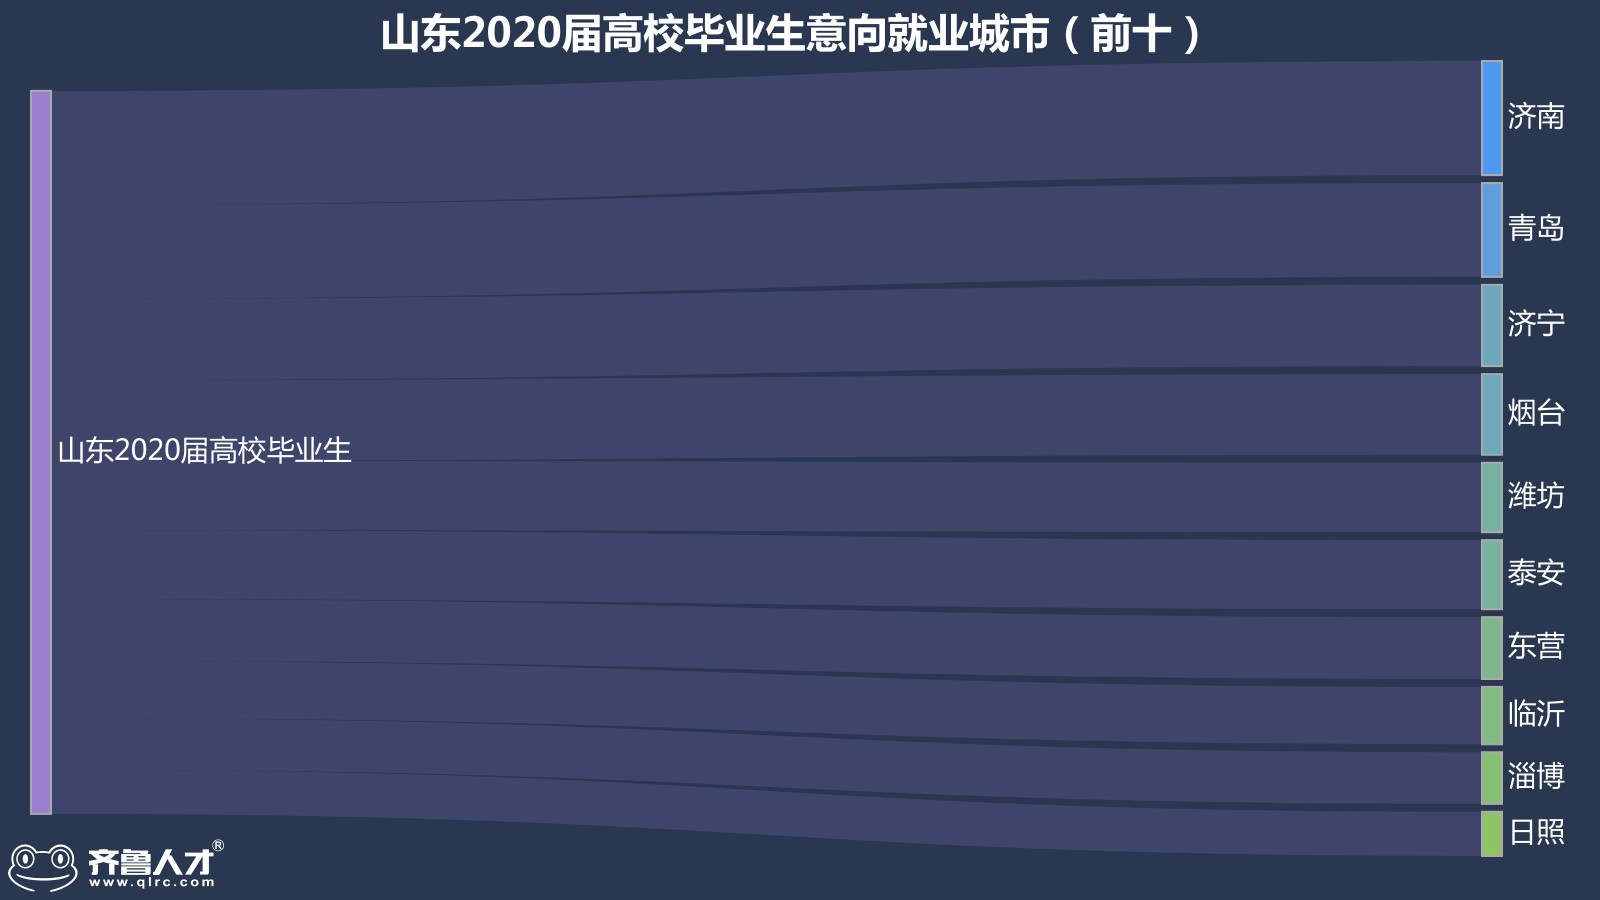 齐鲁人才网济南成为山东2020届高校毕业生就业地首选，平均薪酬达5986元图1.jpg